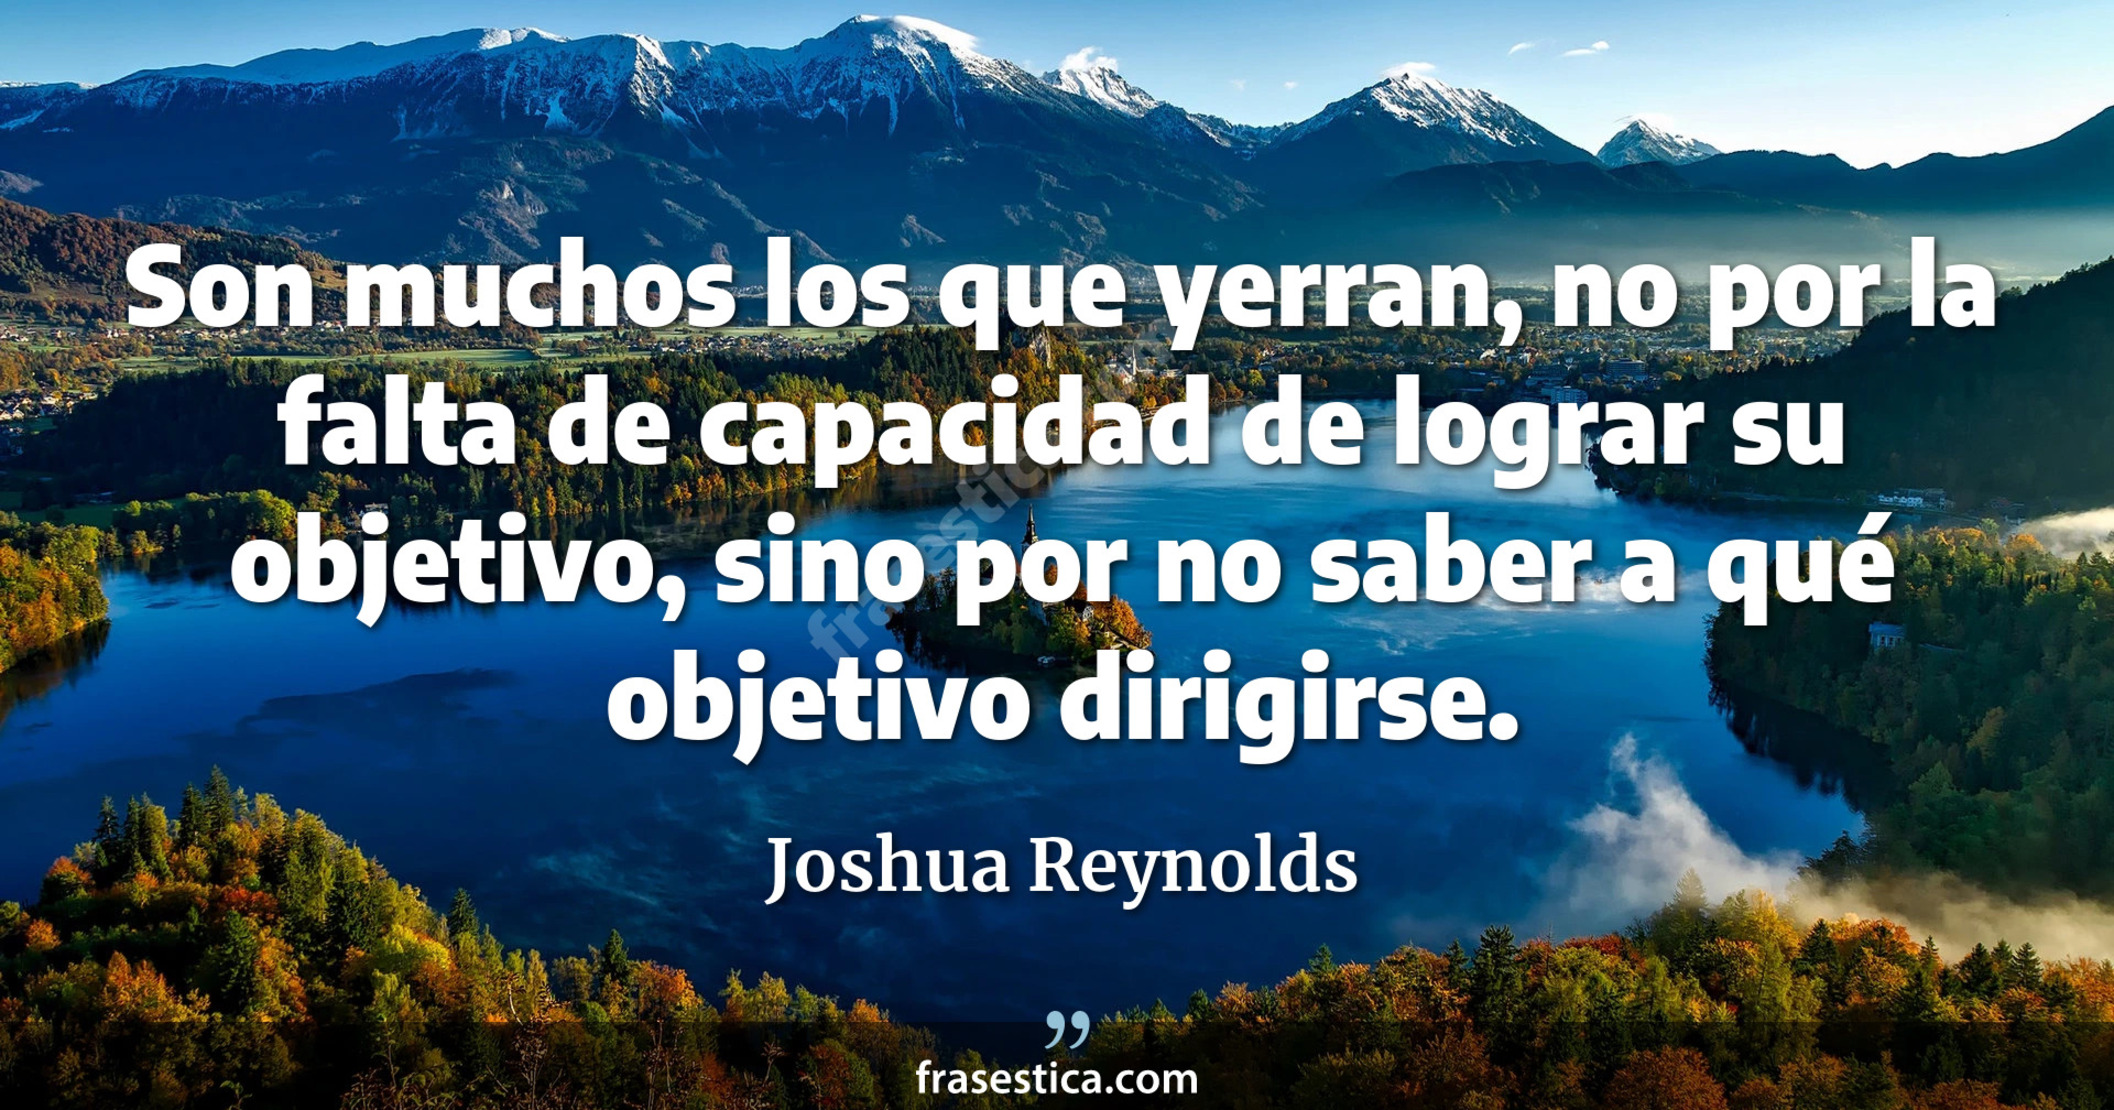 Son muchos los que yerran, no por la falta de capacidad de lograr su objetivo, sino por no saber a qué objetivo dirigirse. - Joshua Reynolds